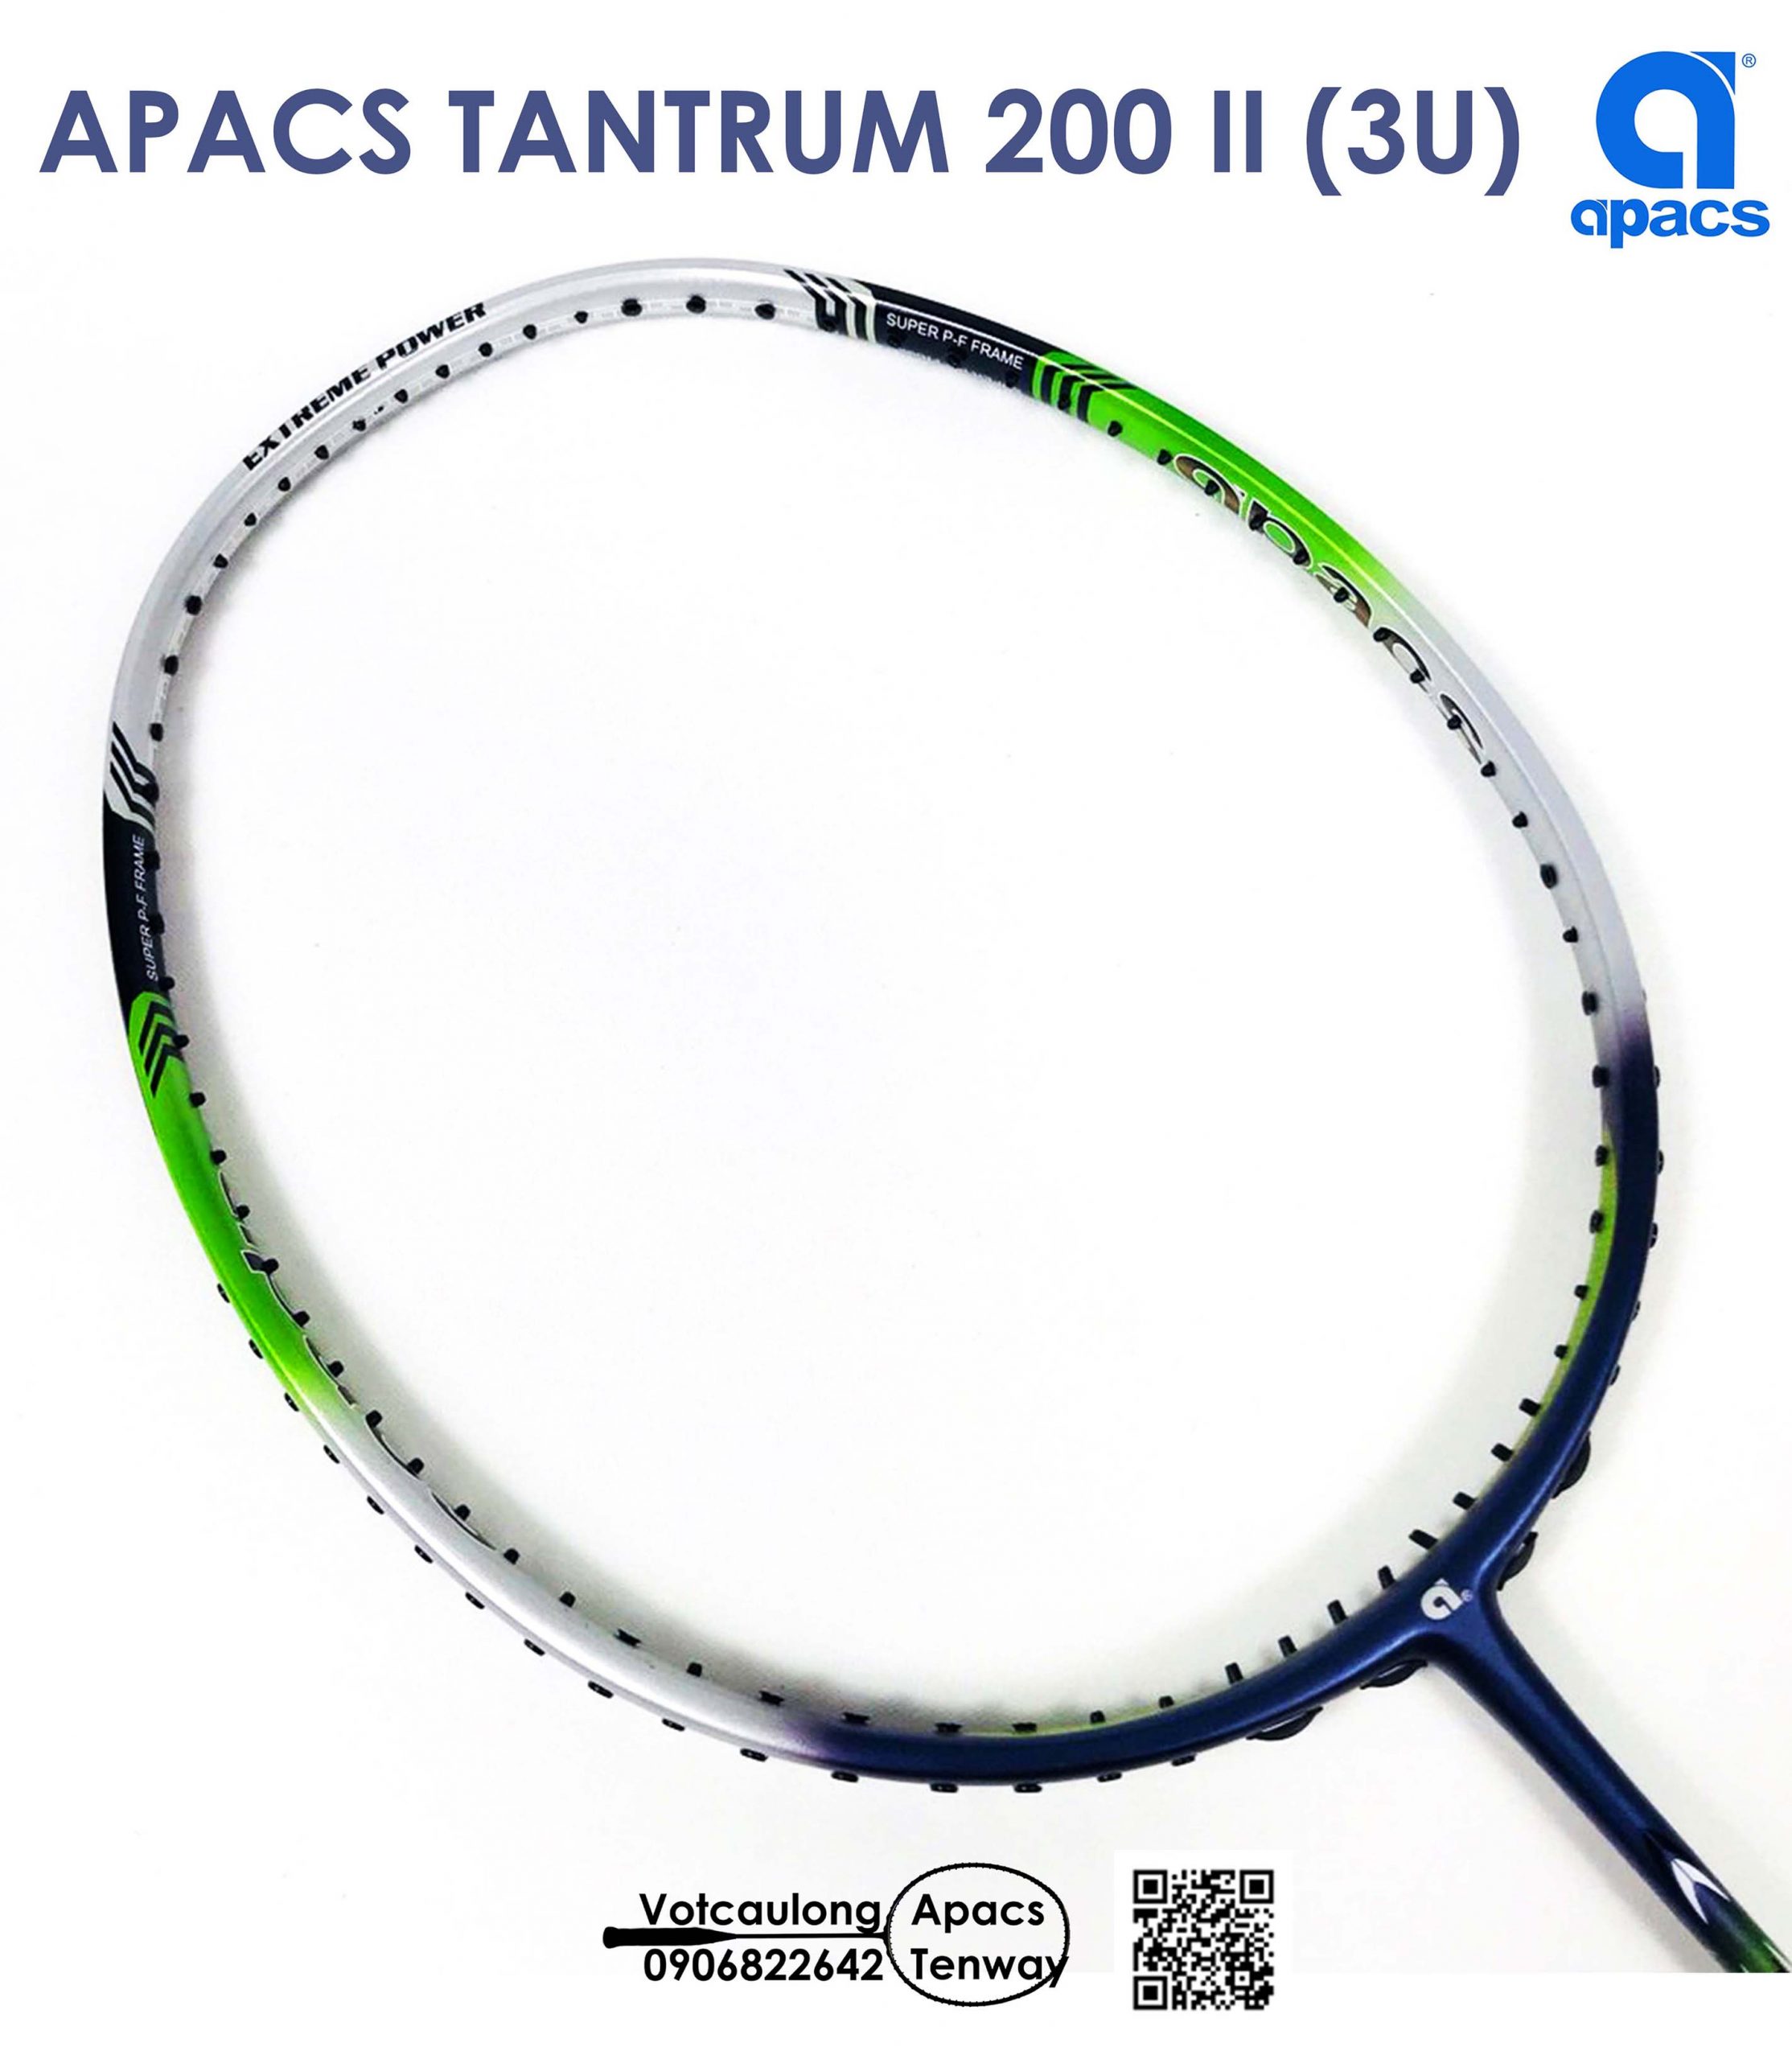 Vợt cầu lông Apacs Tantrum 200 II: Nếu bạn đang tìm kiếm một chiếc vợt cầu lông chất lượng cao, thì Apacs Tantrum 200 II là sự lựa chọn tuyệt vời dành cho bạn. Với thiết kế độc đáo và nặng chỉ 85g, vợt cầu lông này mang lại cho bạn khả năng điều khiển và đánh bóng tuyệt vời, giúp bạn đạt được những thắng lợi trên sân cầu lông.